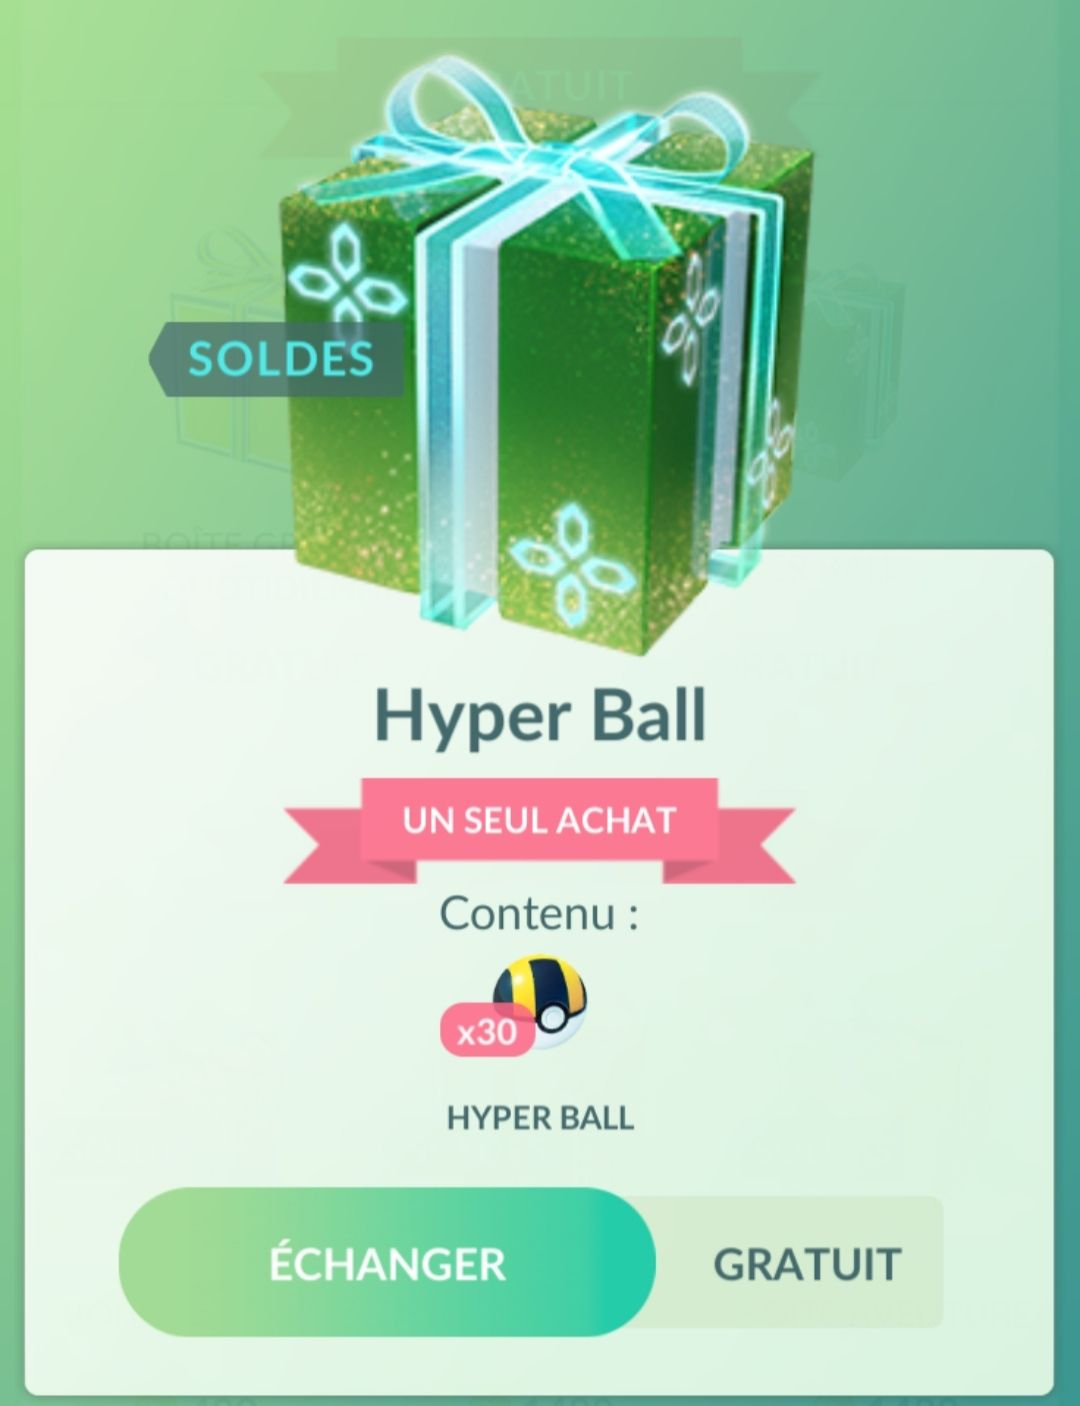 30 hypers Balls offertes sur Pokémon Go (Dématérialisé)